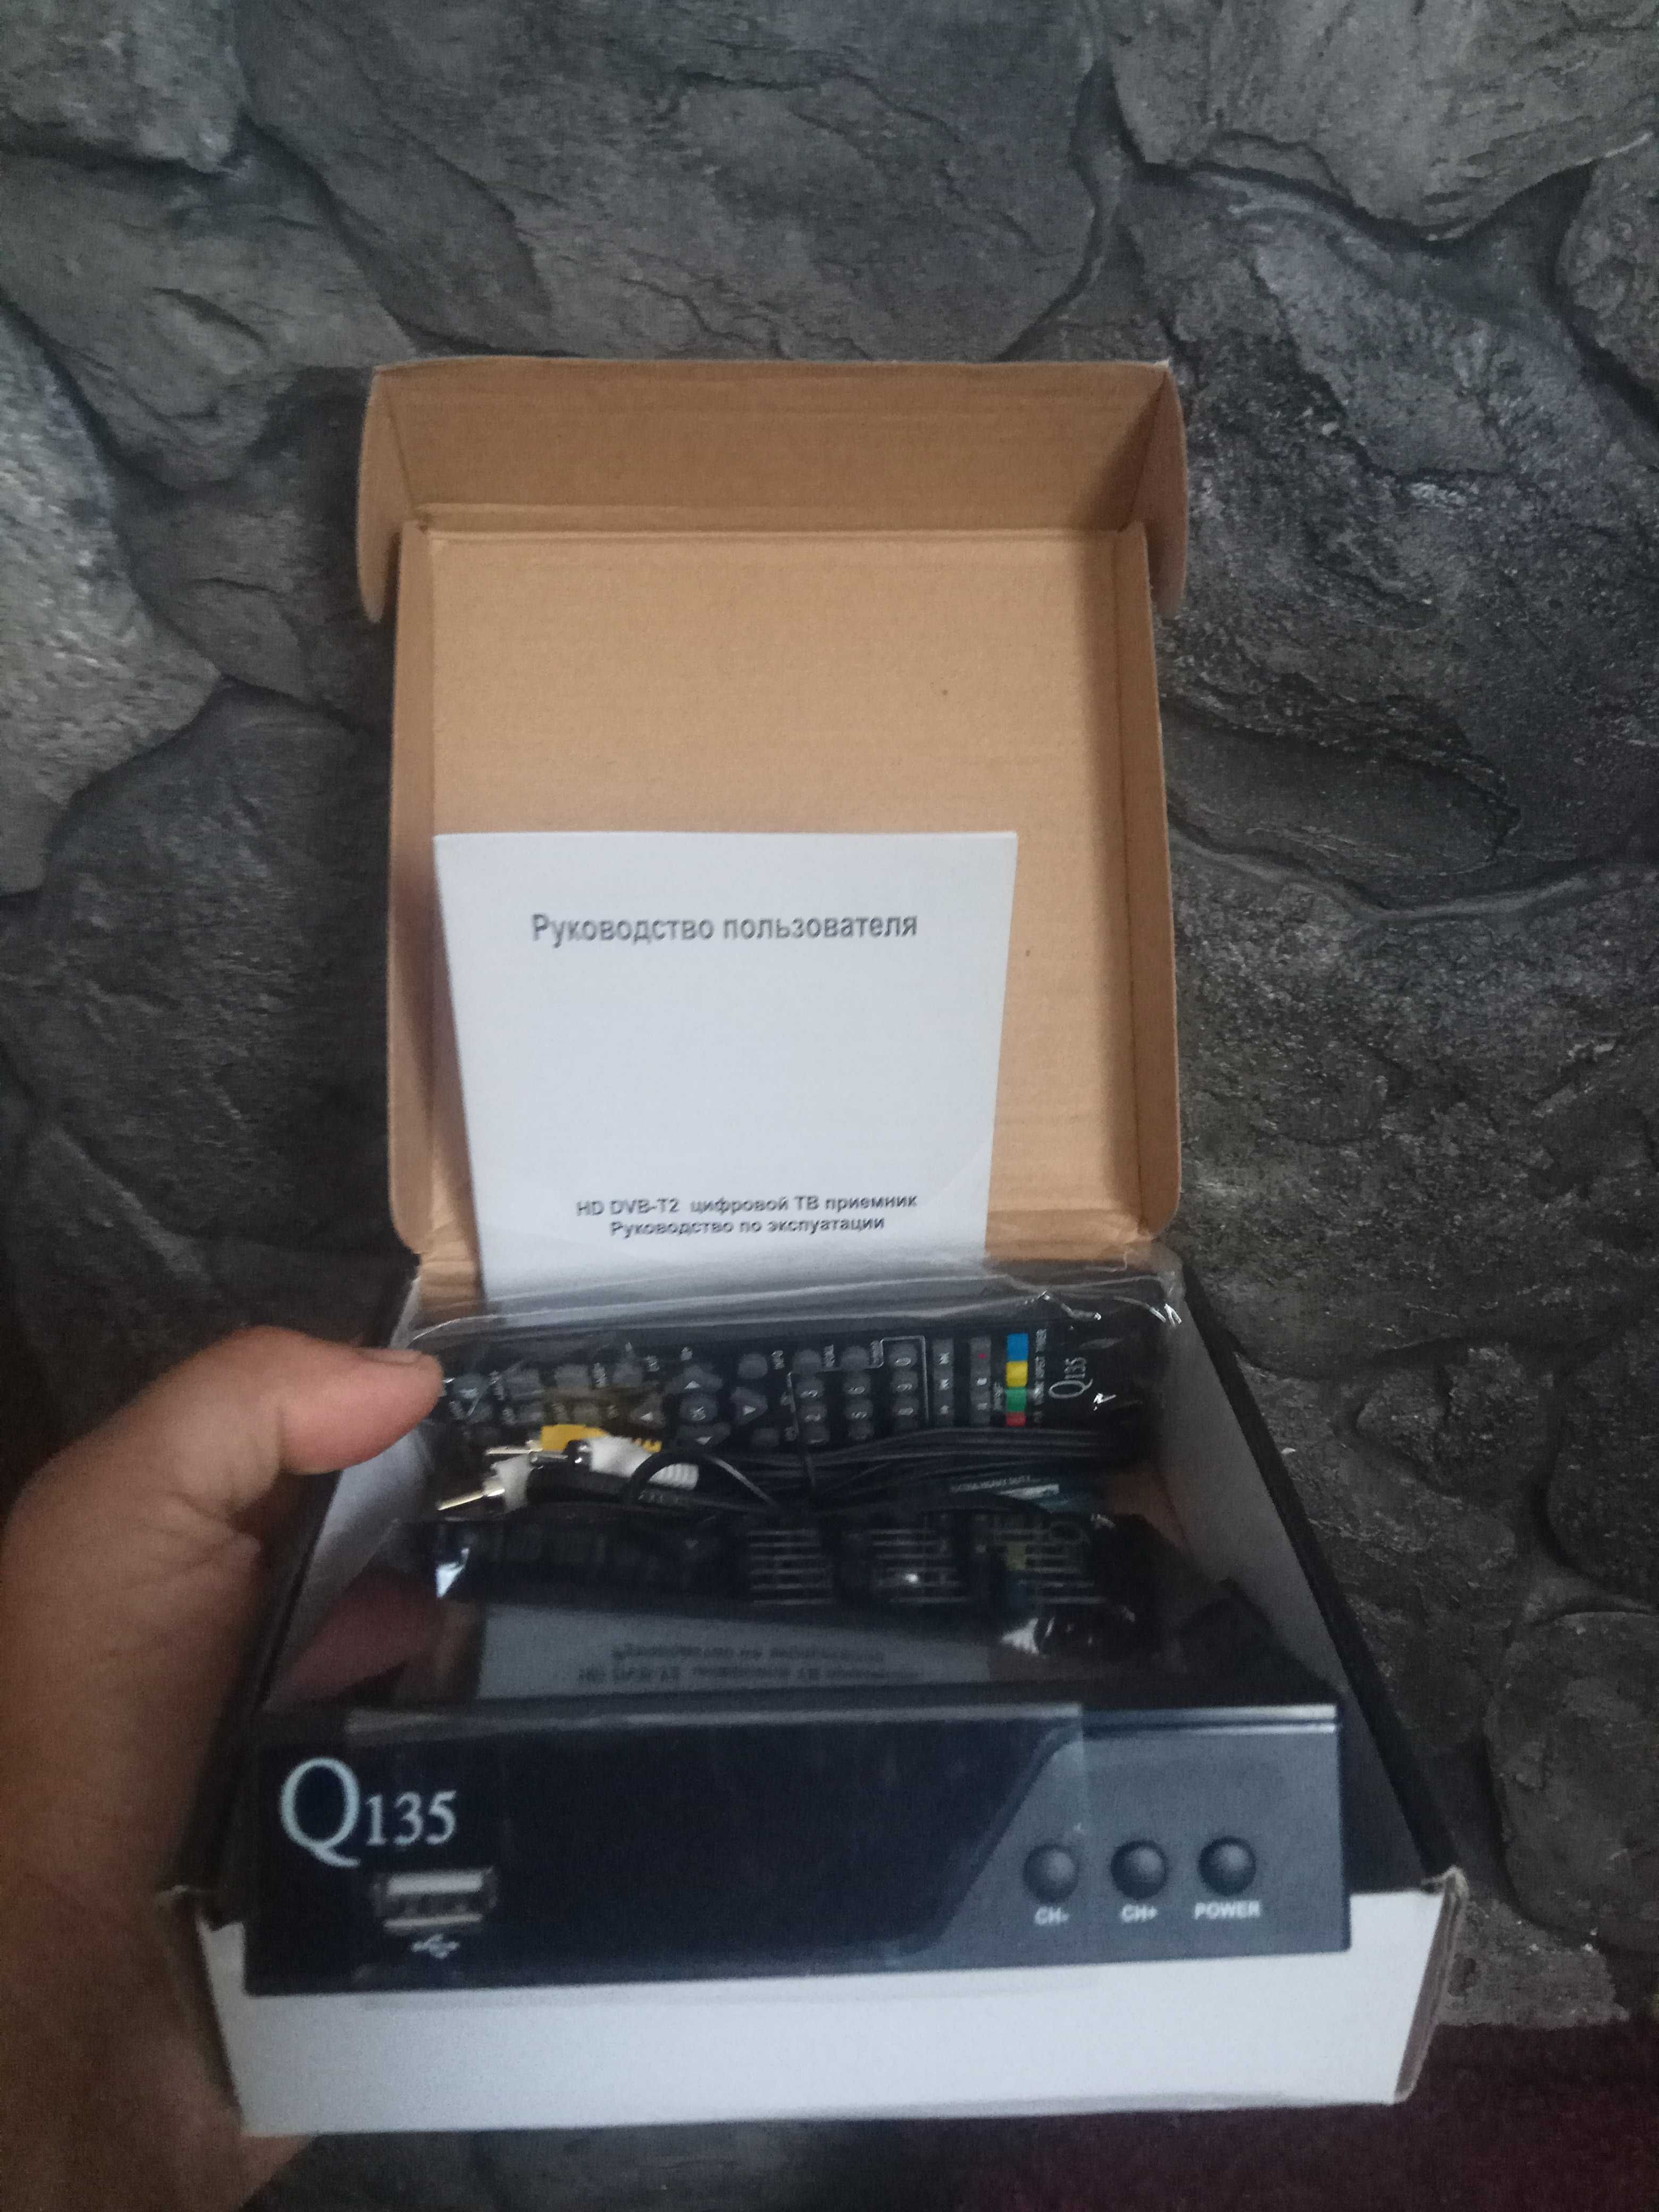 ресивер Q-135 для цифрового ТВ